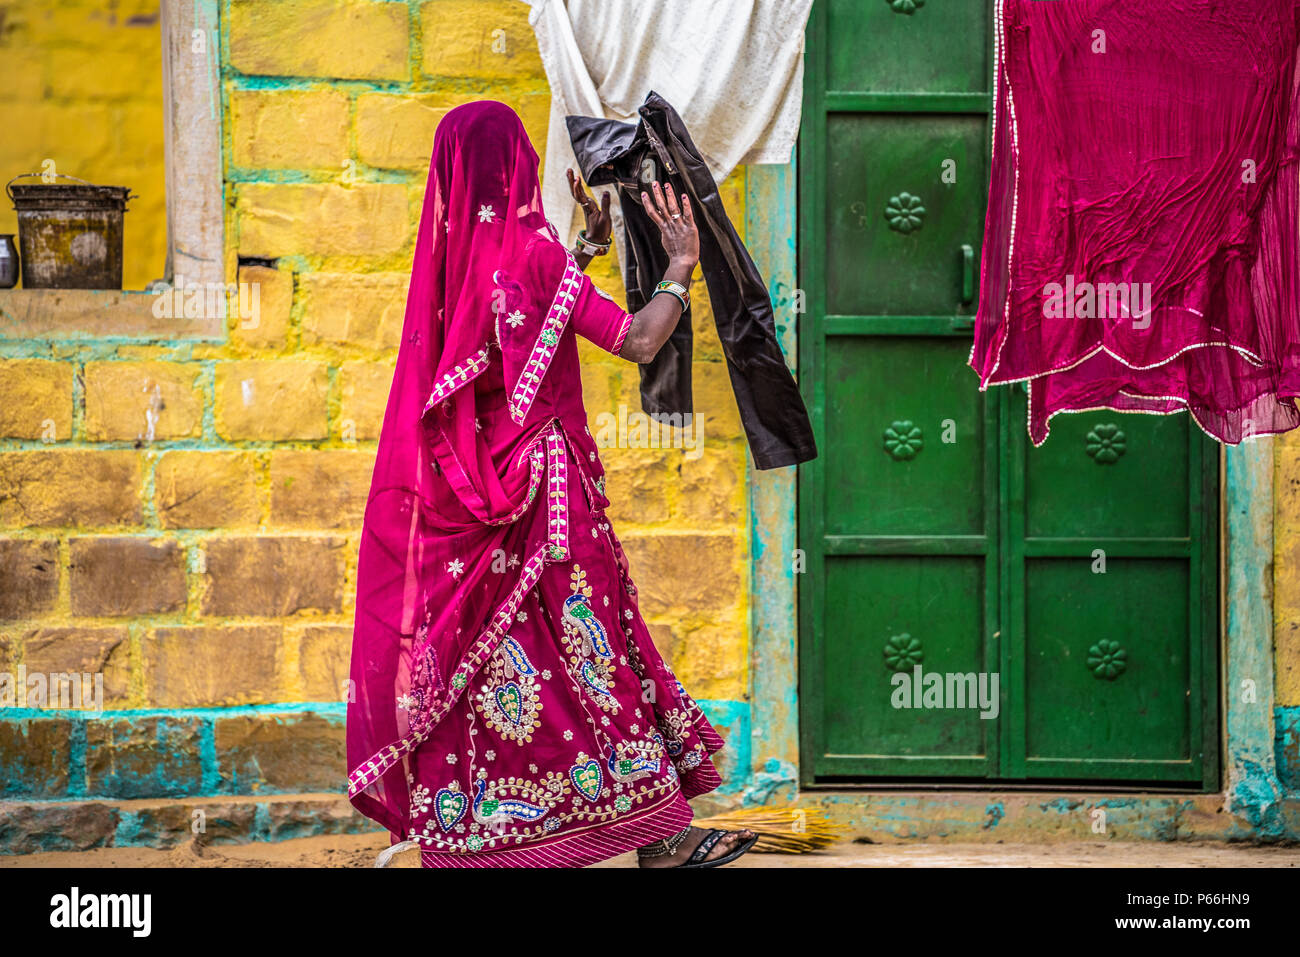 INDIA RAJASTHAN la vita del villaggio nel deserto di Thar Foto Stock